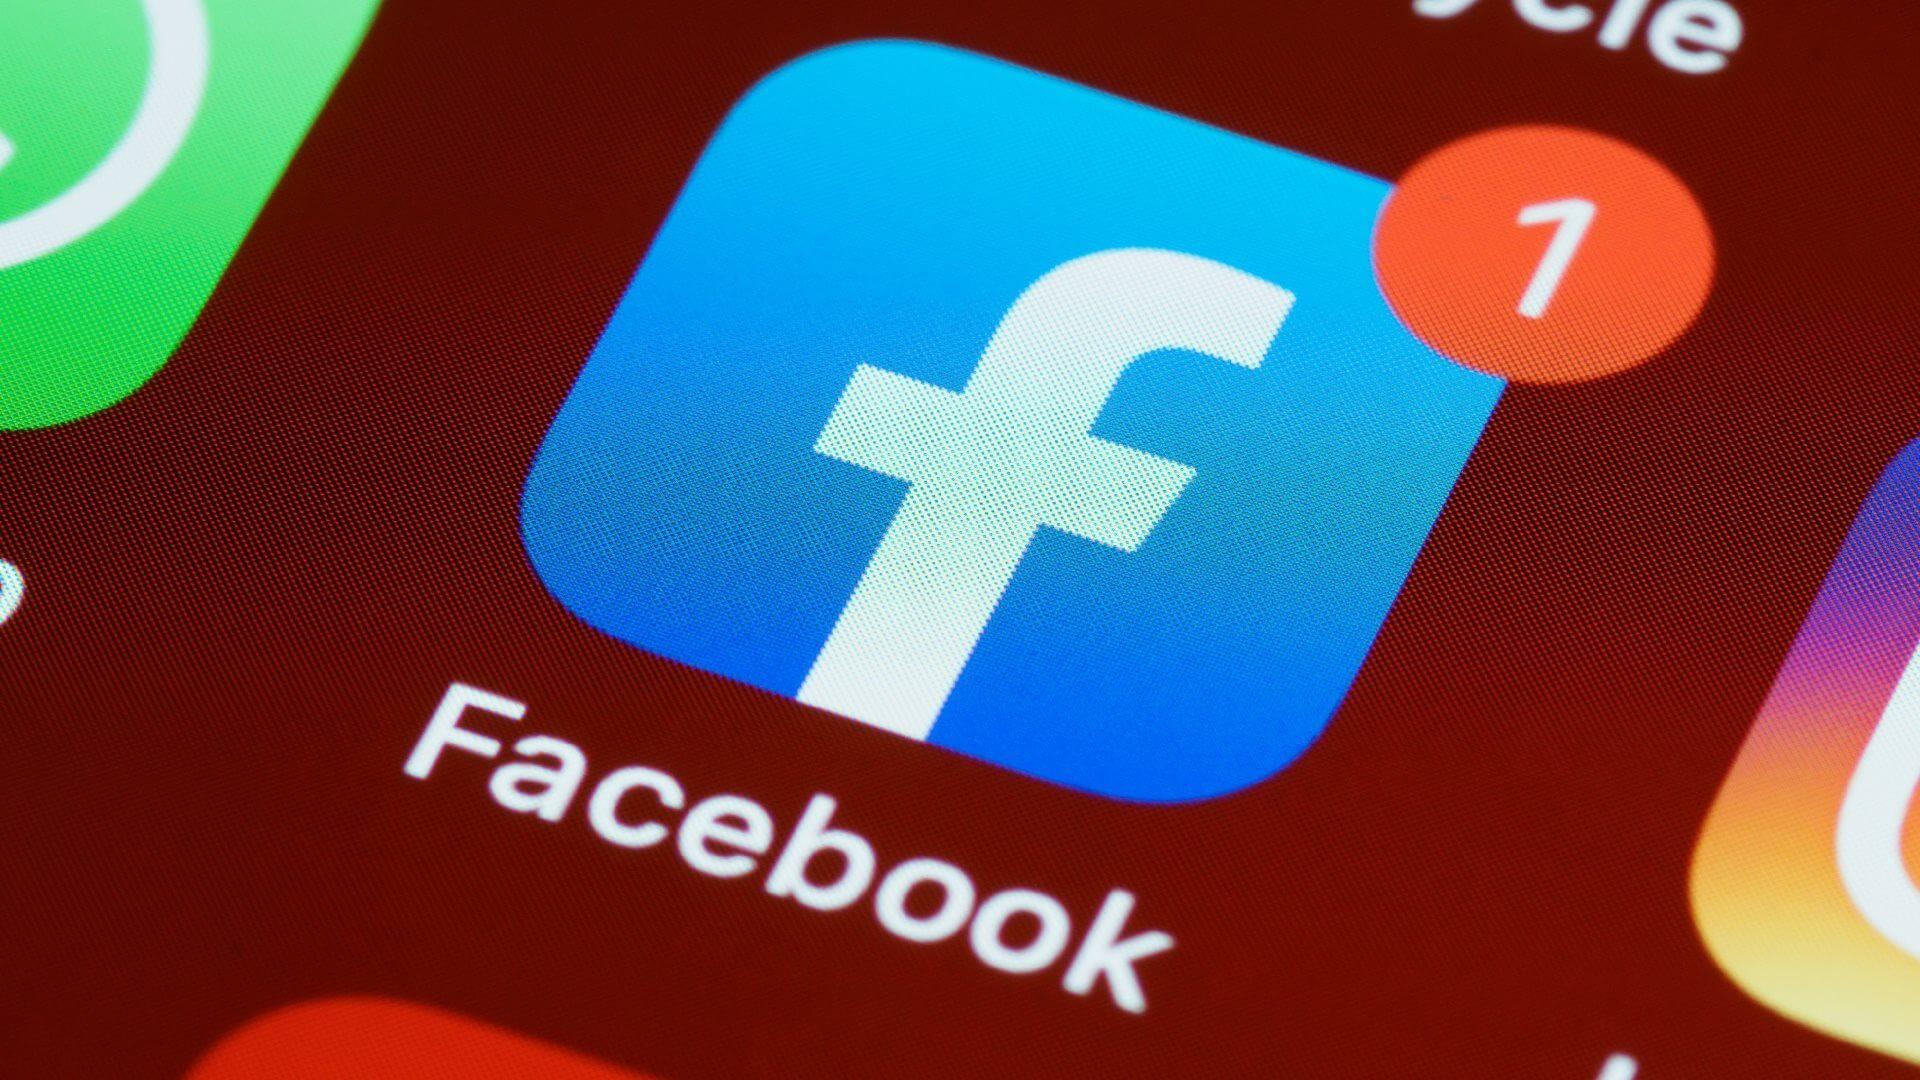  Facebook ir Instagram leis vartotojams prijungti savo kriptovaliutų pinigines